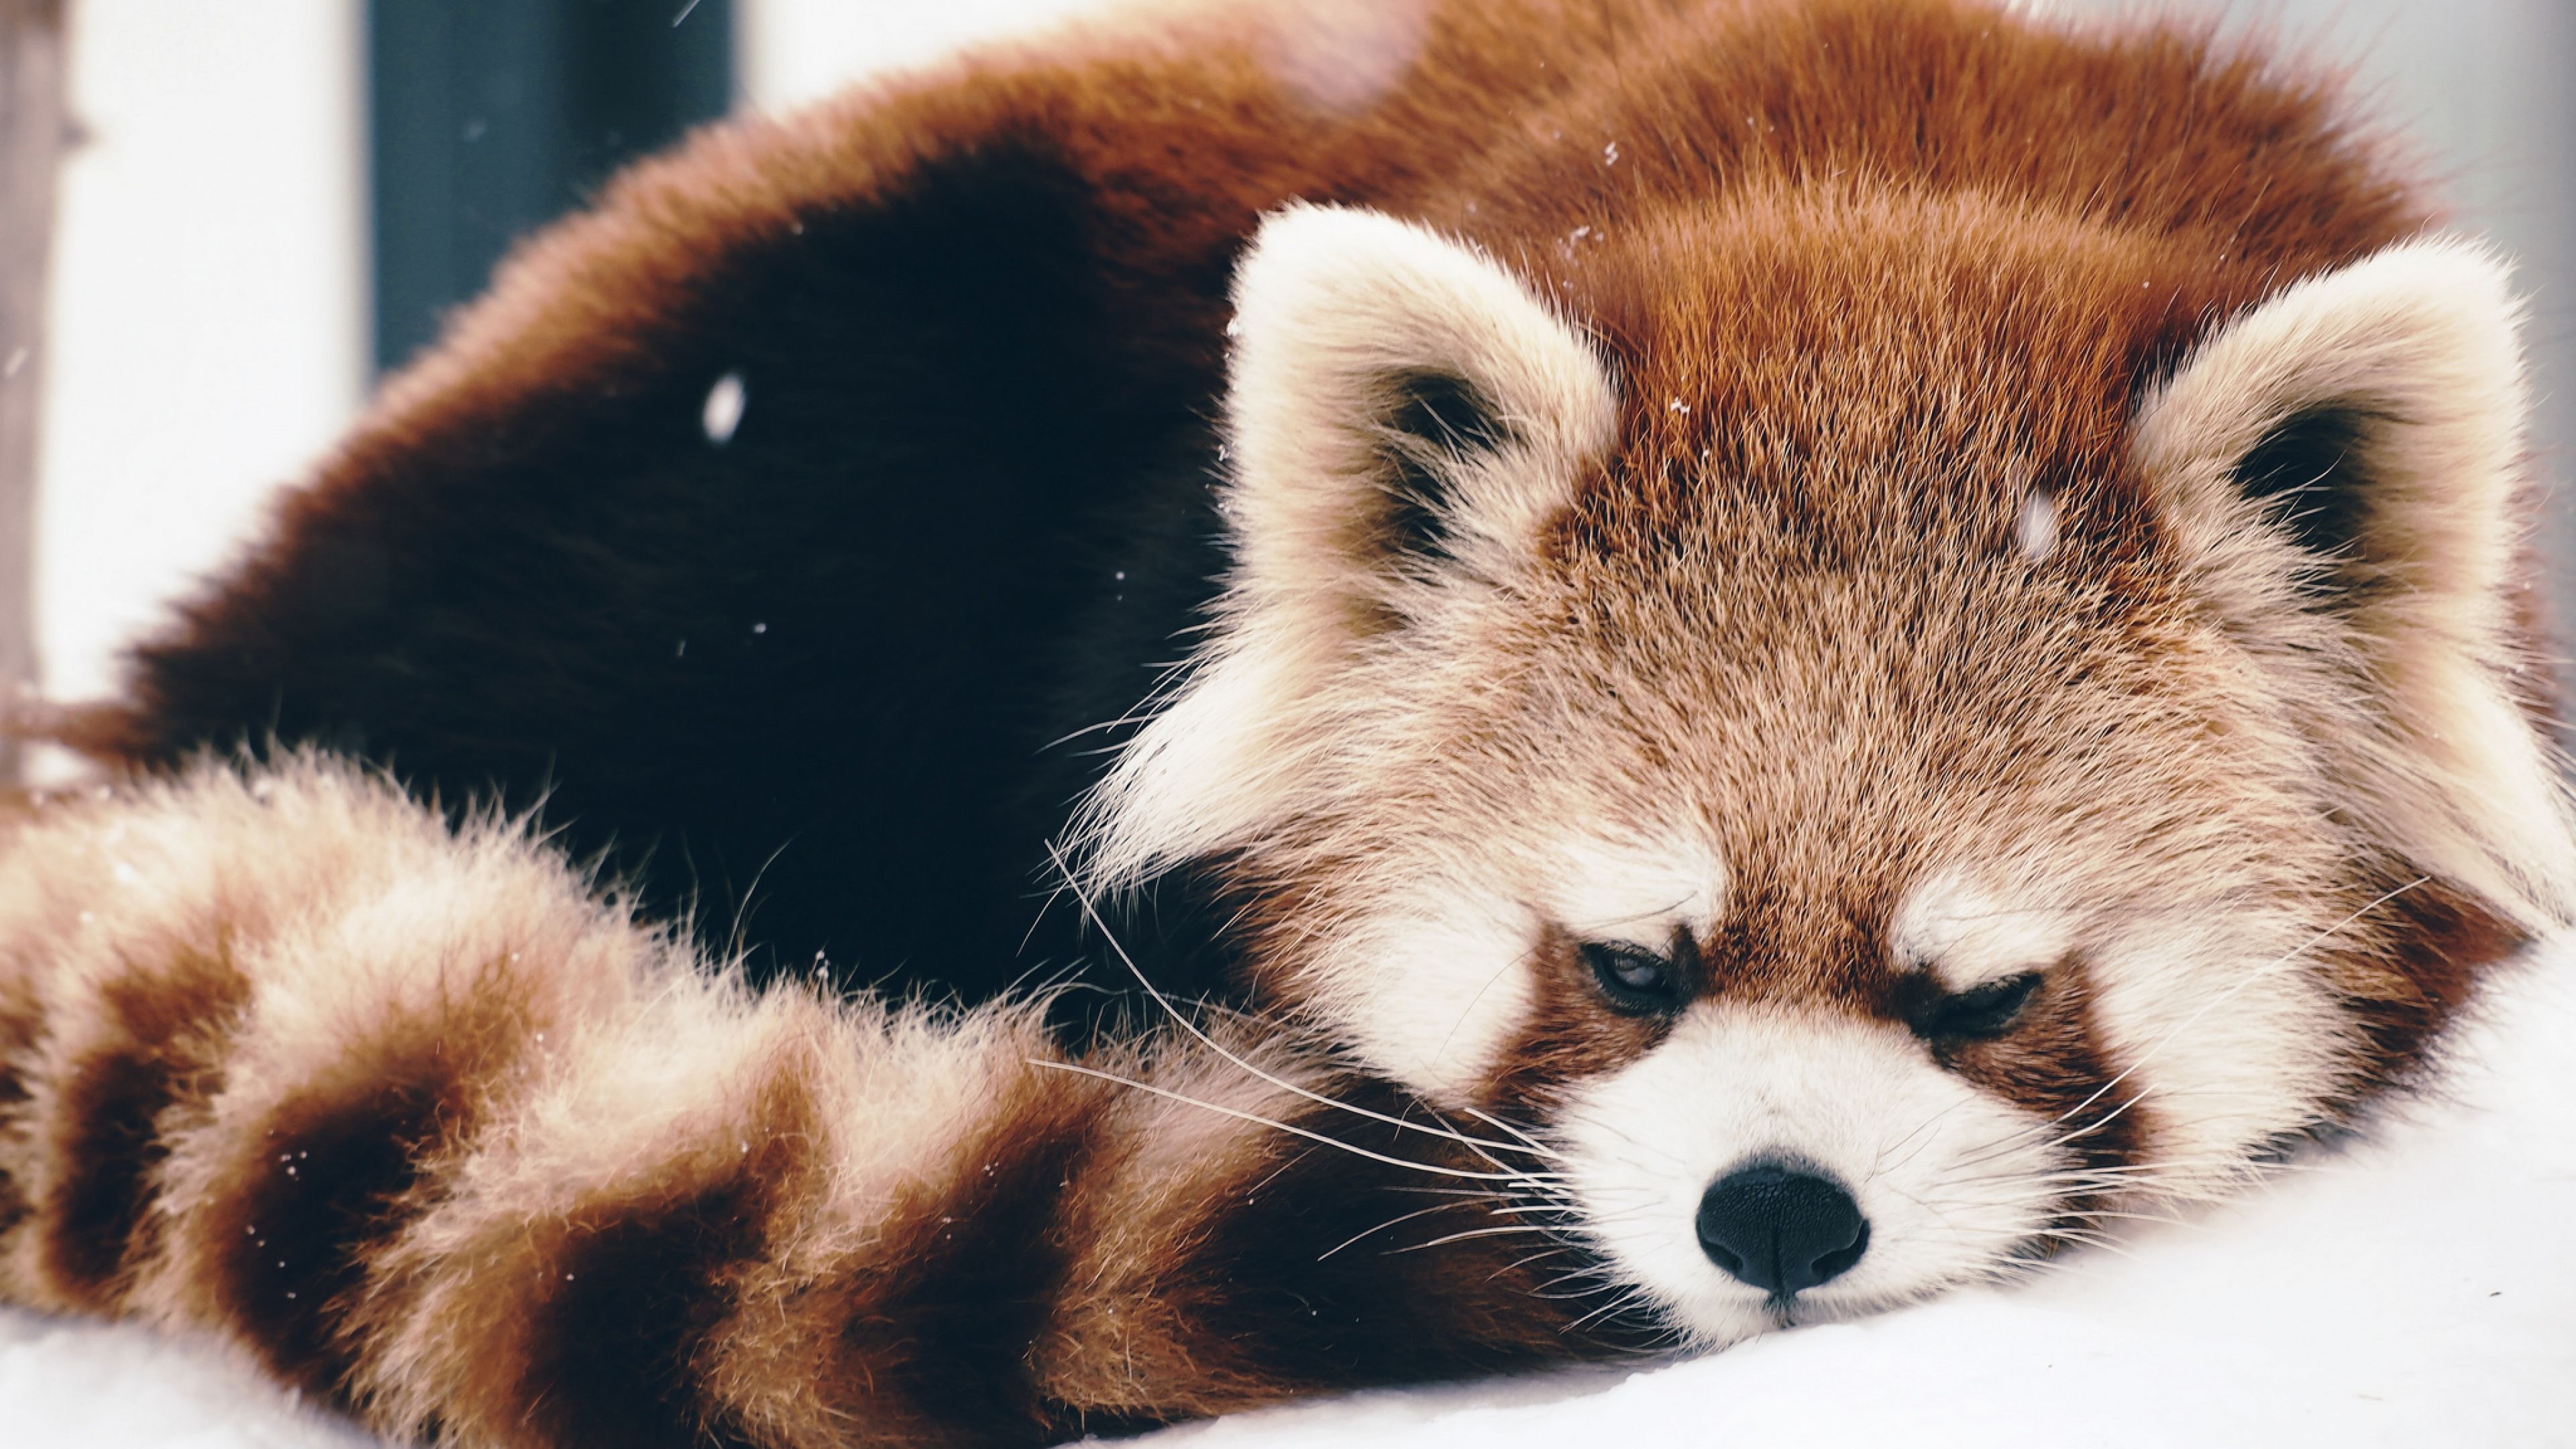 Image result for red panda. Panda wallpaper, Red panda cute, Red panda image